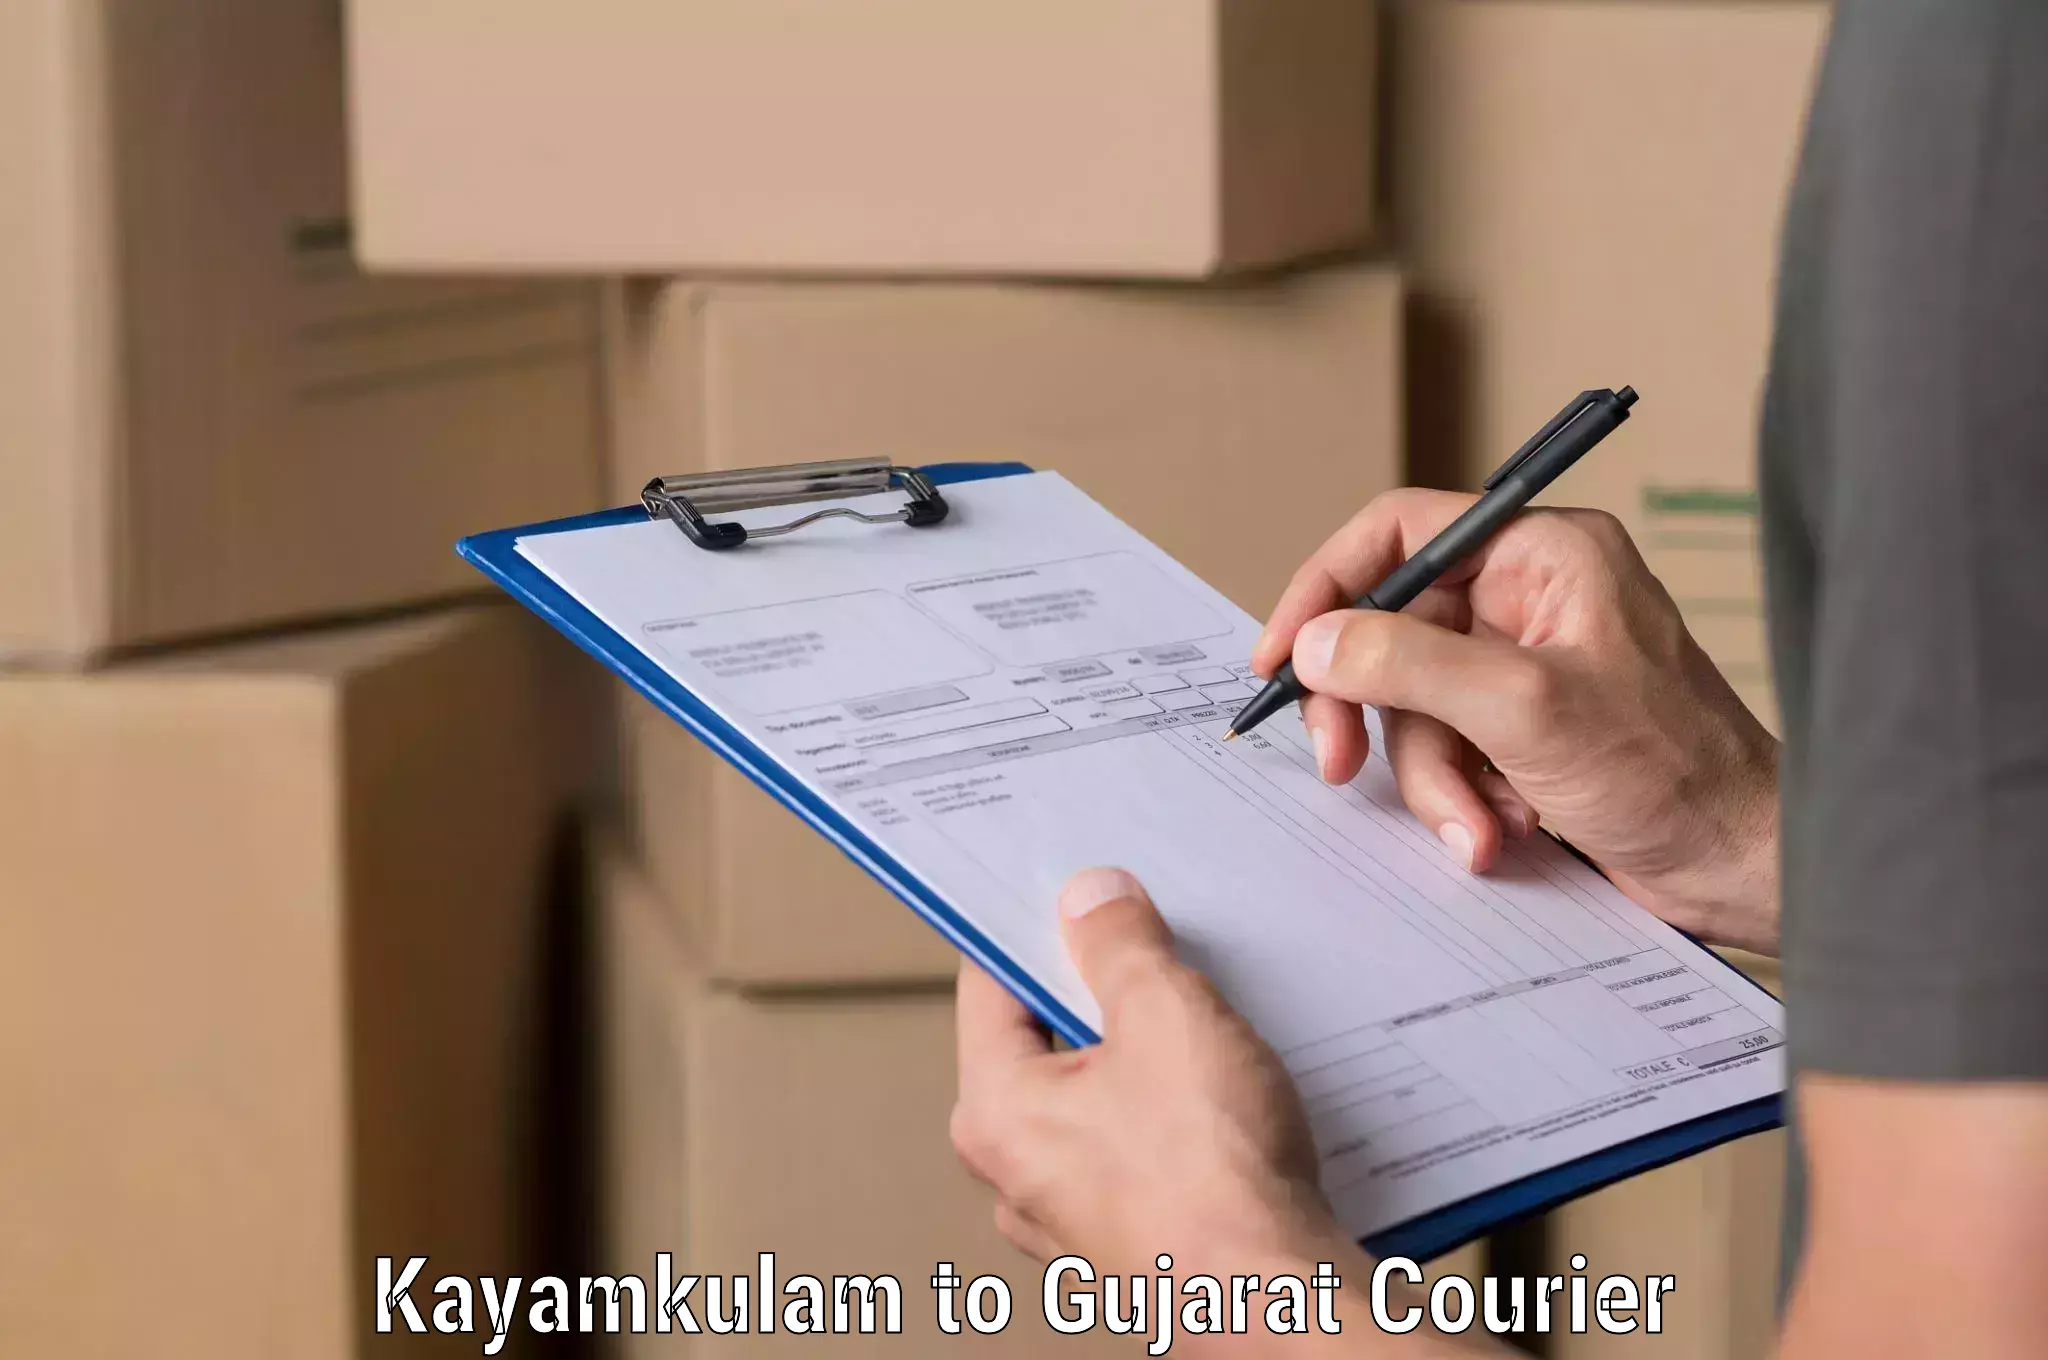 Global courier networks Kayamkulam to Kheda